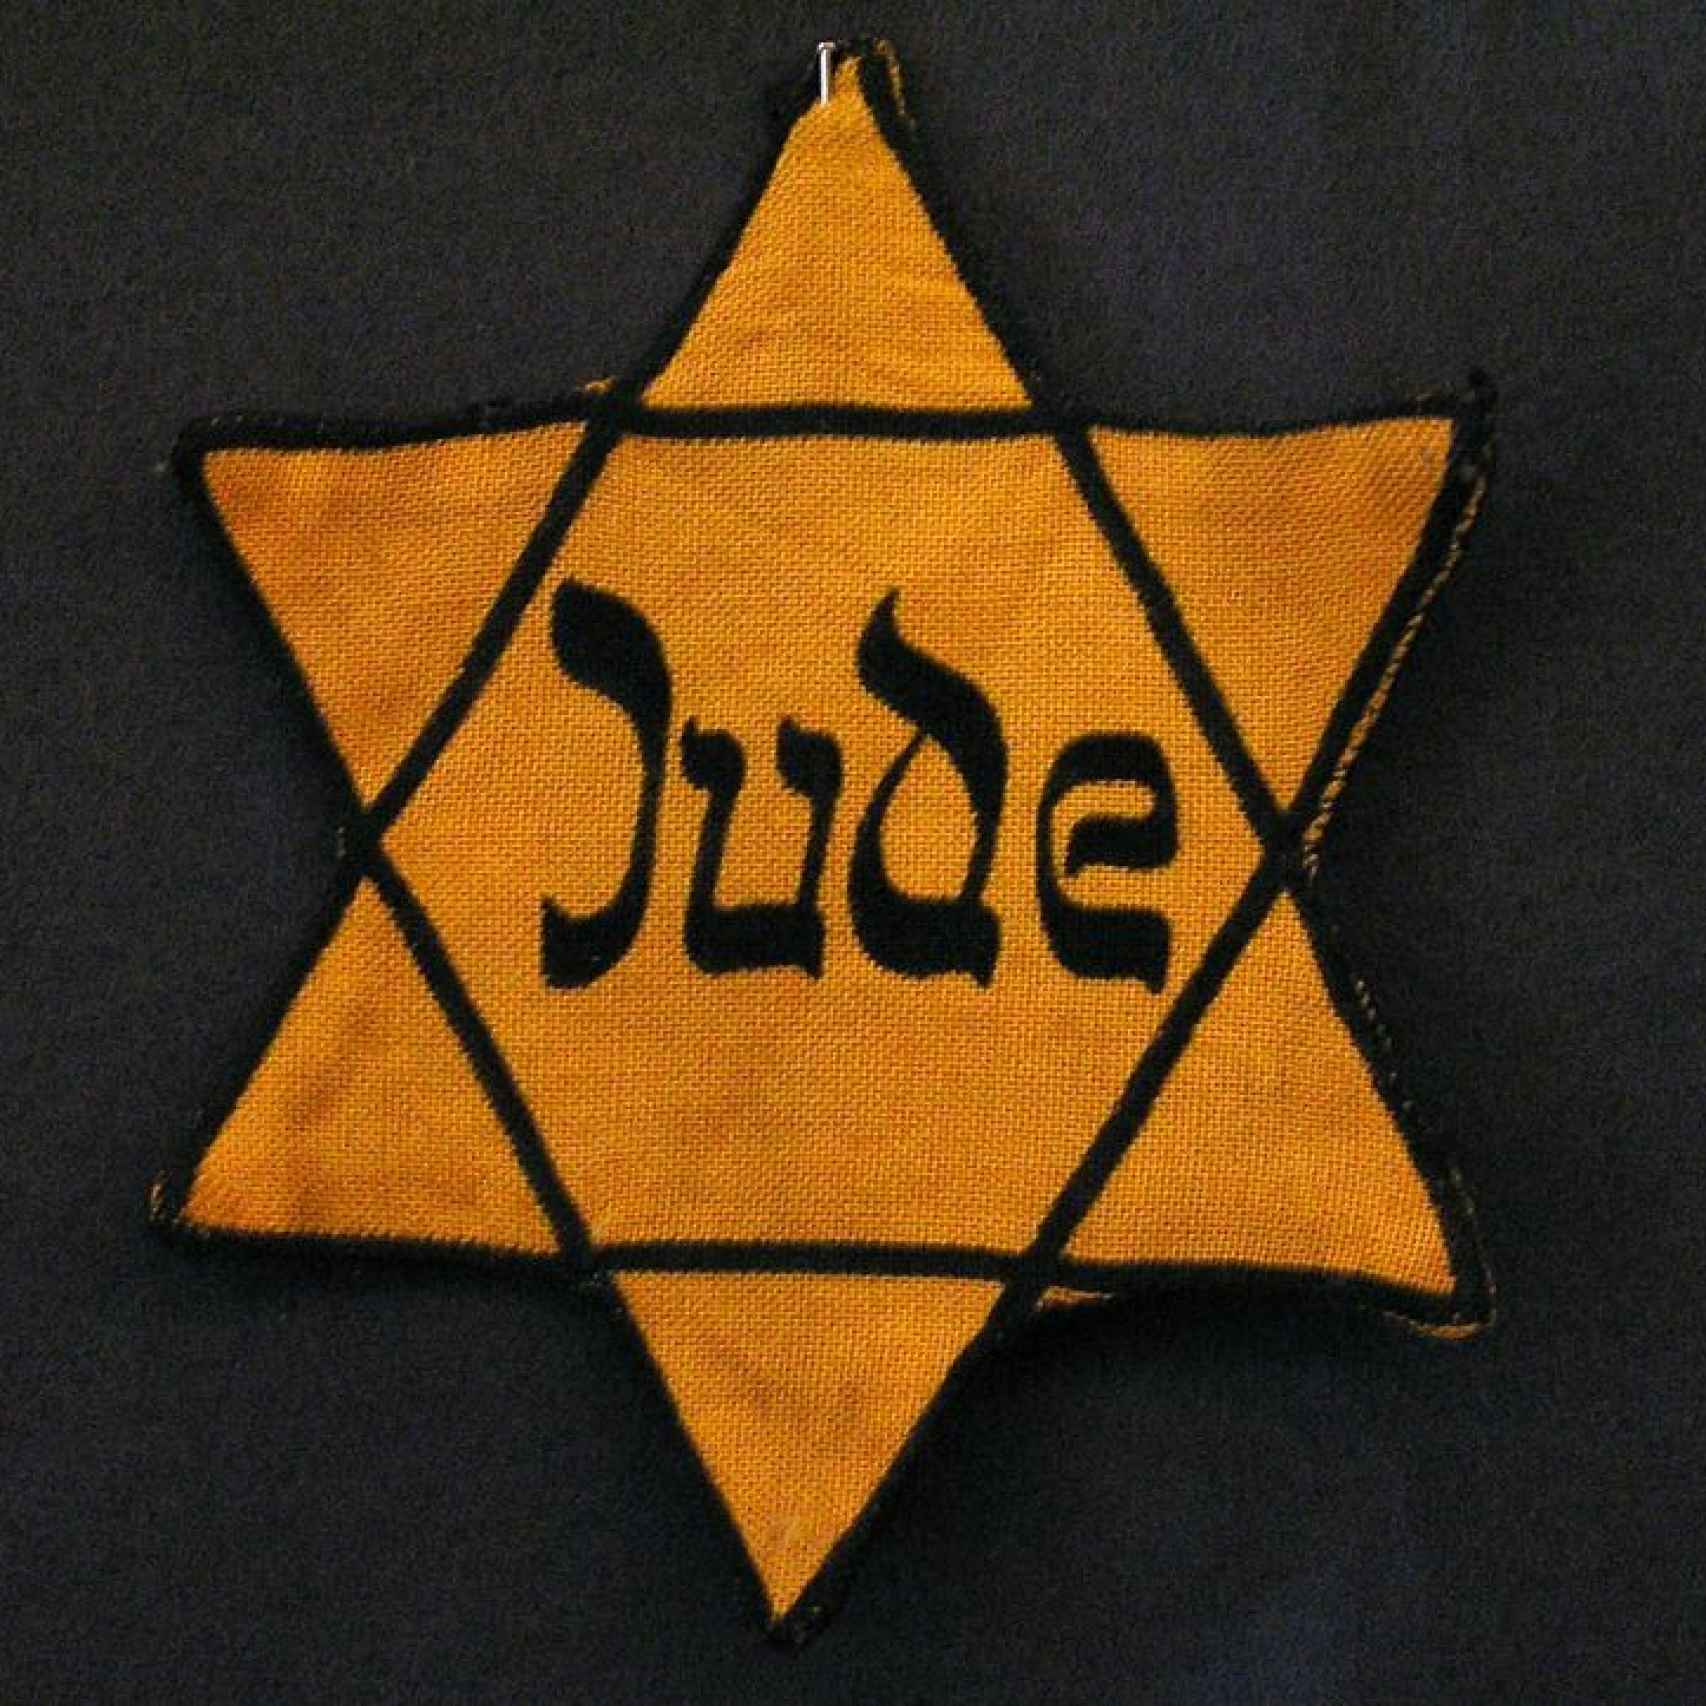 La estrella amarilla es un símbolo nazi, un hexagrama amarillo con caracteres pseudo-hebreos.